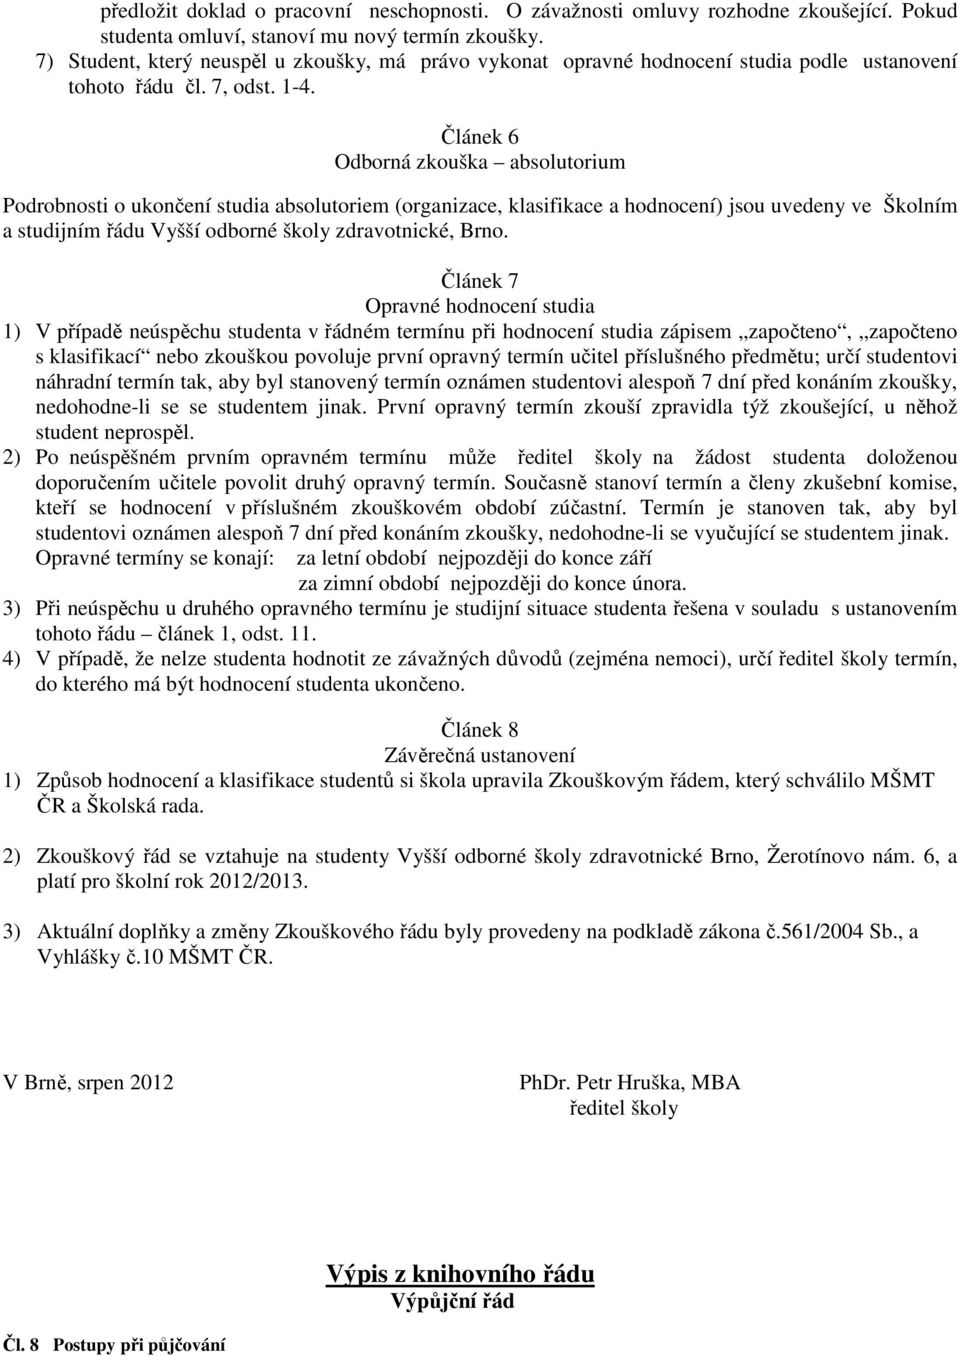 Článek 6 Odborná zkouška absolutorium Podrobnosti o ukončení studia absolutoriem (organizace, klasifikace a hodnocení) jsou uvedeny ve Školním a studijním řádu Vyšší odborné školy zdravotnické, Brno.